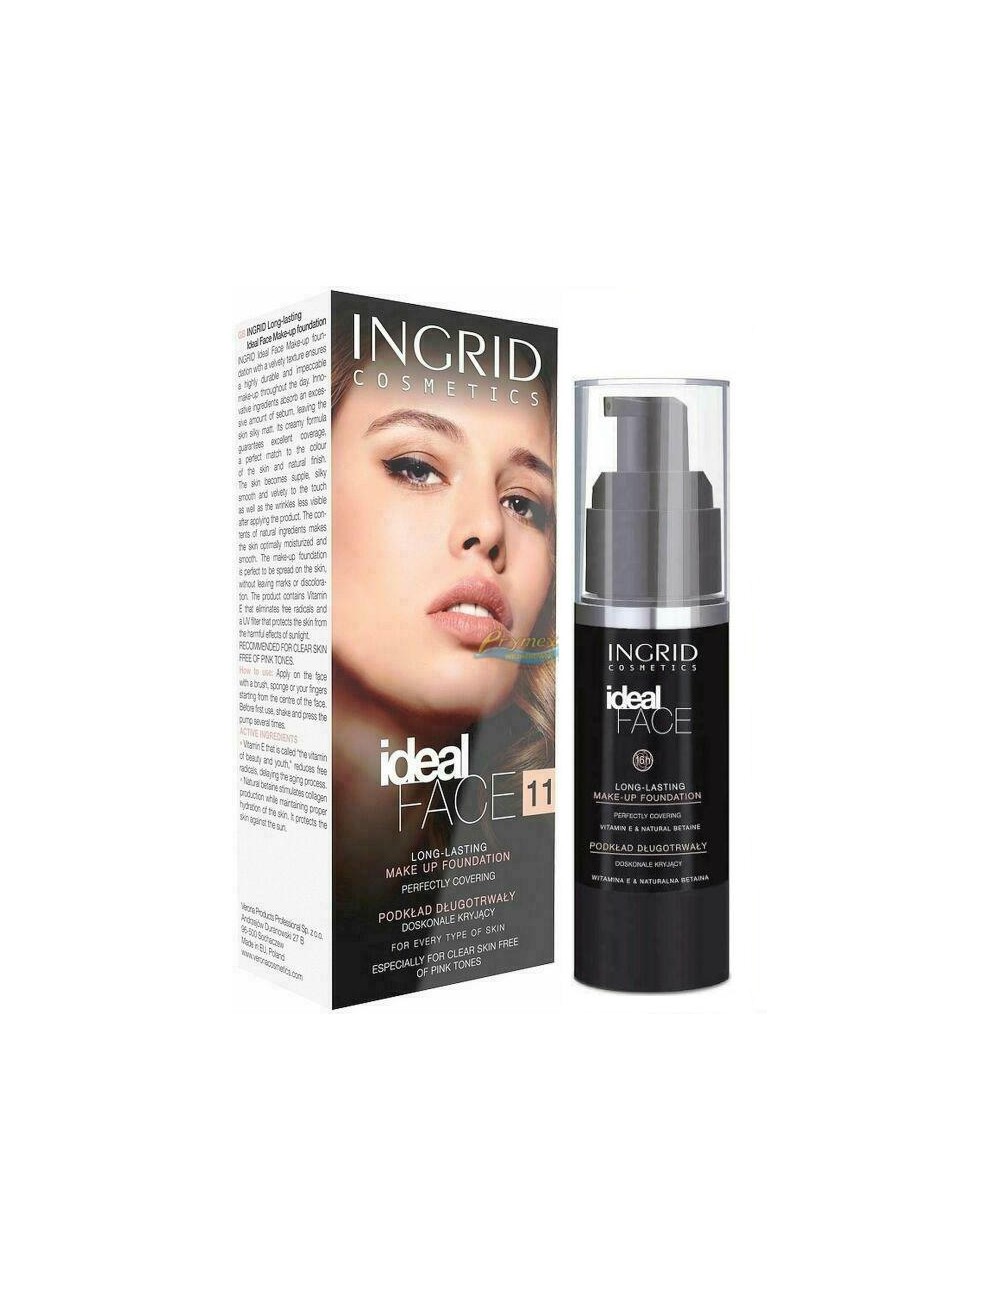 Ingrid Ideal Face 11 Podkład Długotrwały Doskonale Kryjący (cielisty) 30 ml